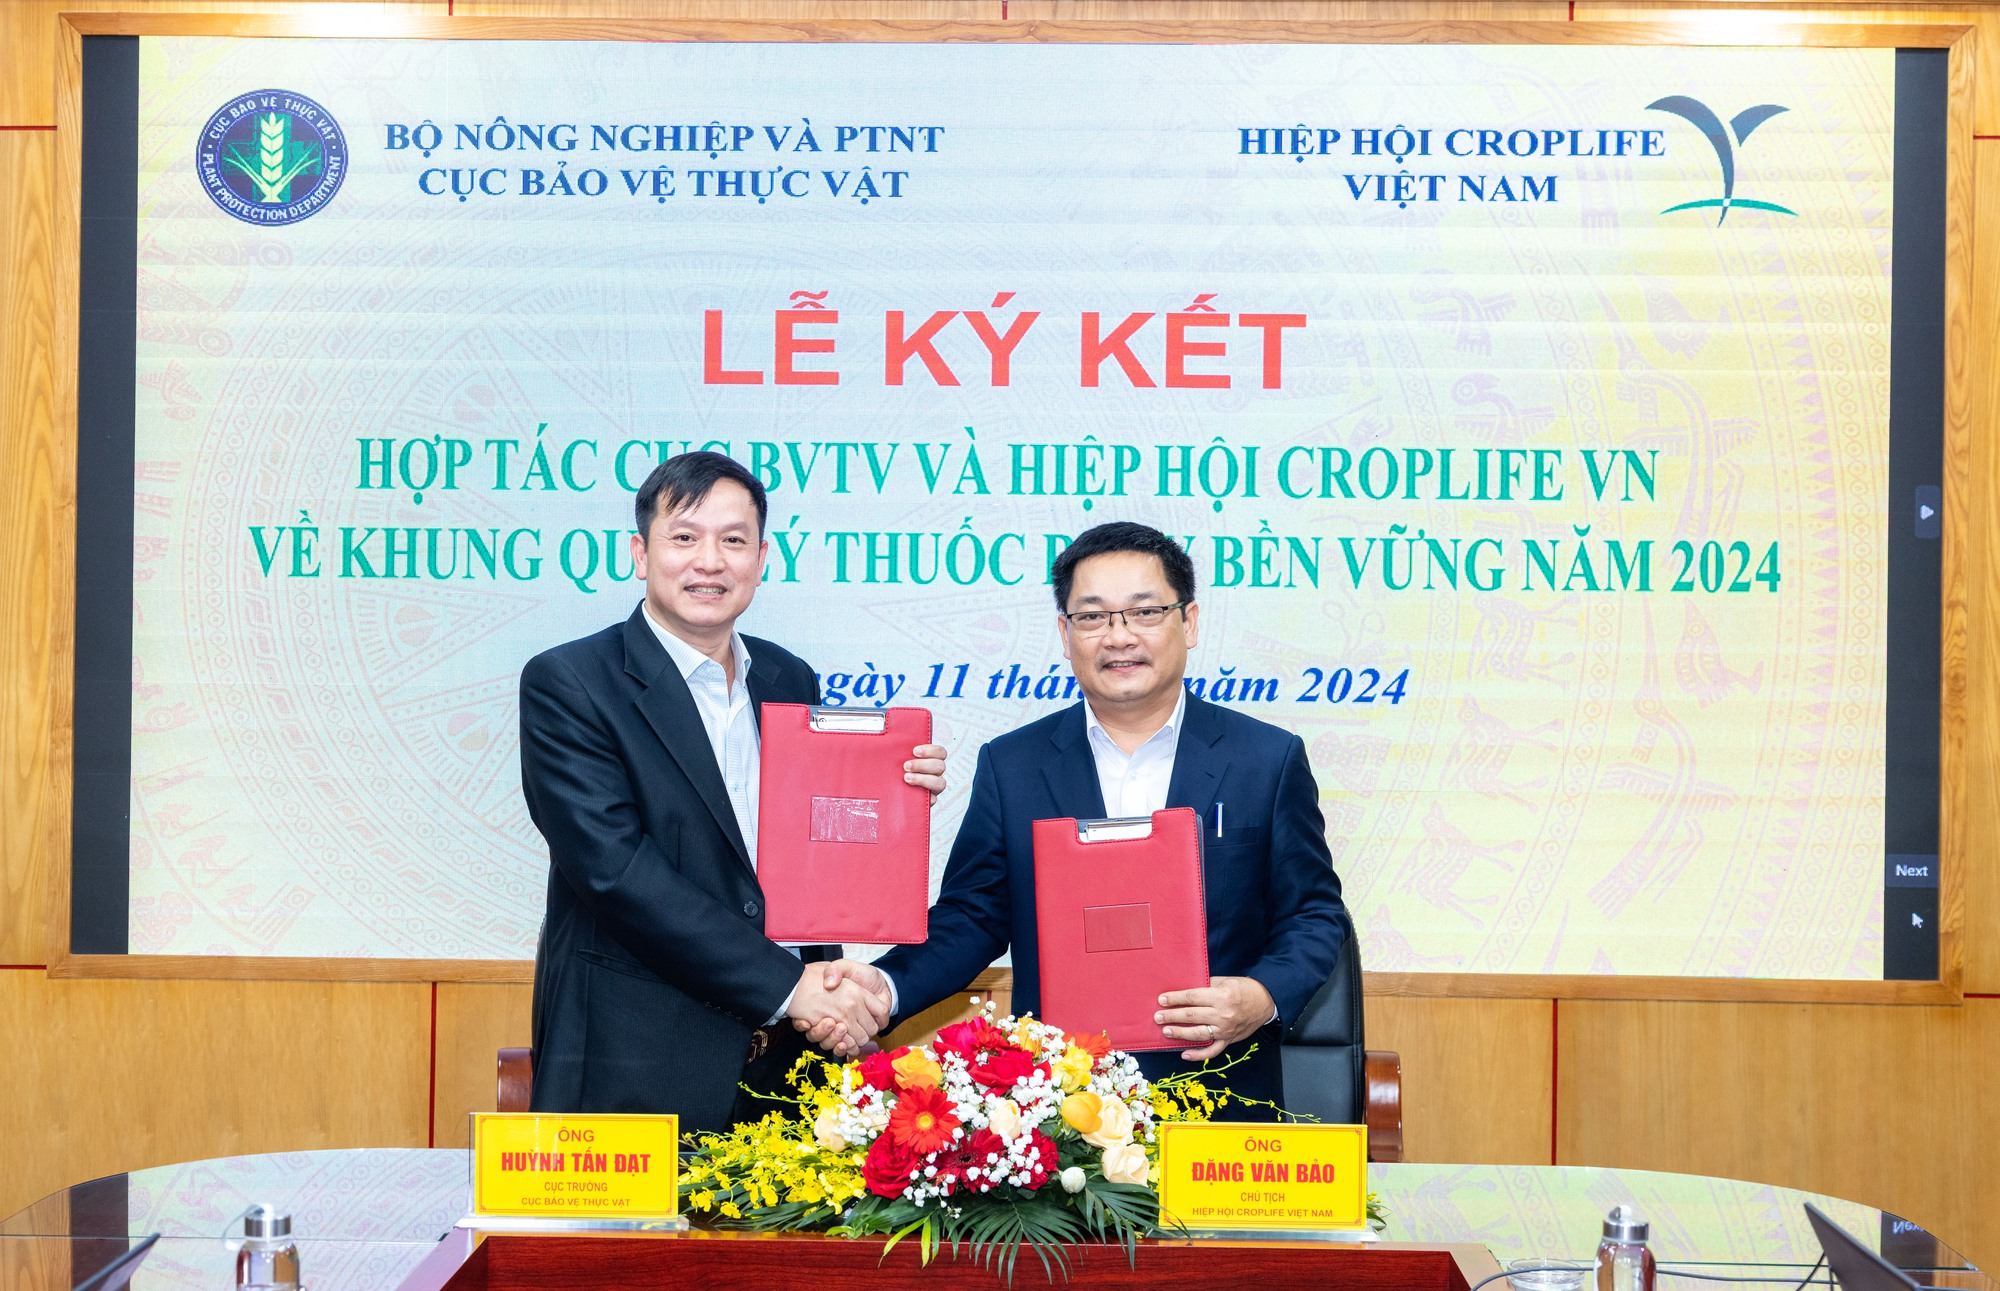 Cục Bảo vệ thực vật, CropLife Việt Nam ký kết triển khai chương trình "Khung quản lý thuốc bảo vệ thực vật bền vững" - Ảnh 1.